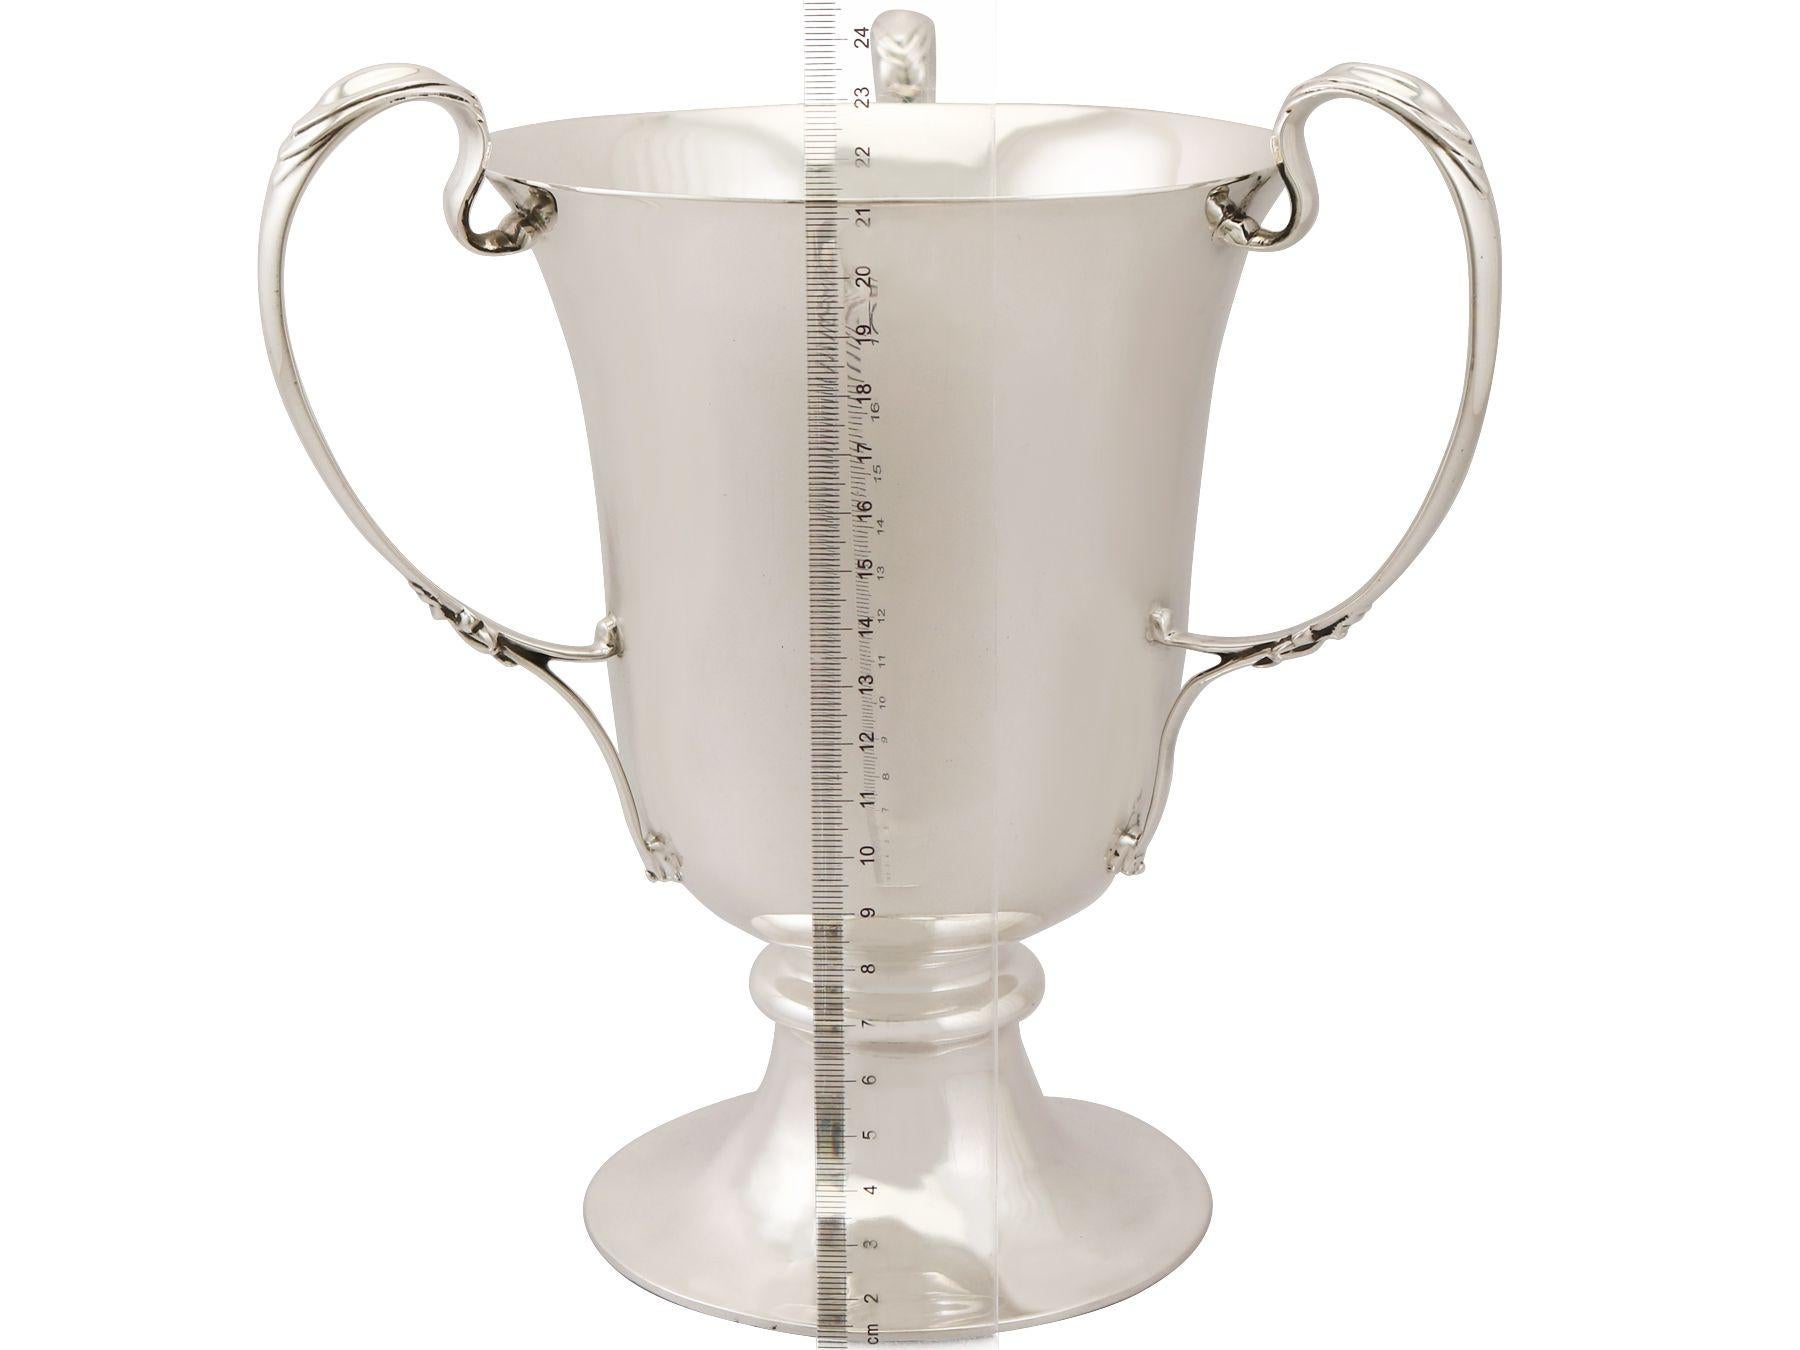 Antique Sterling Silver Presentation Cup / Bottle Holder 3